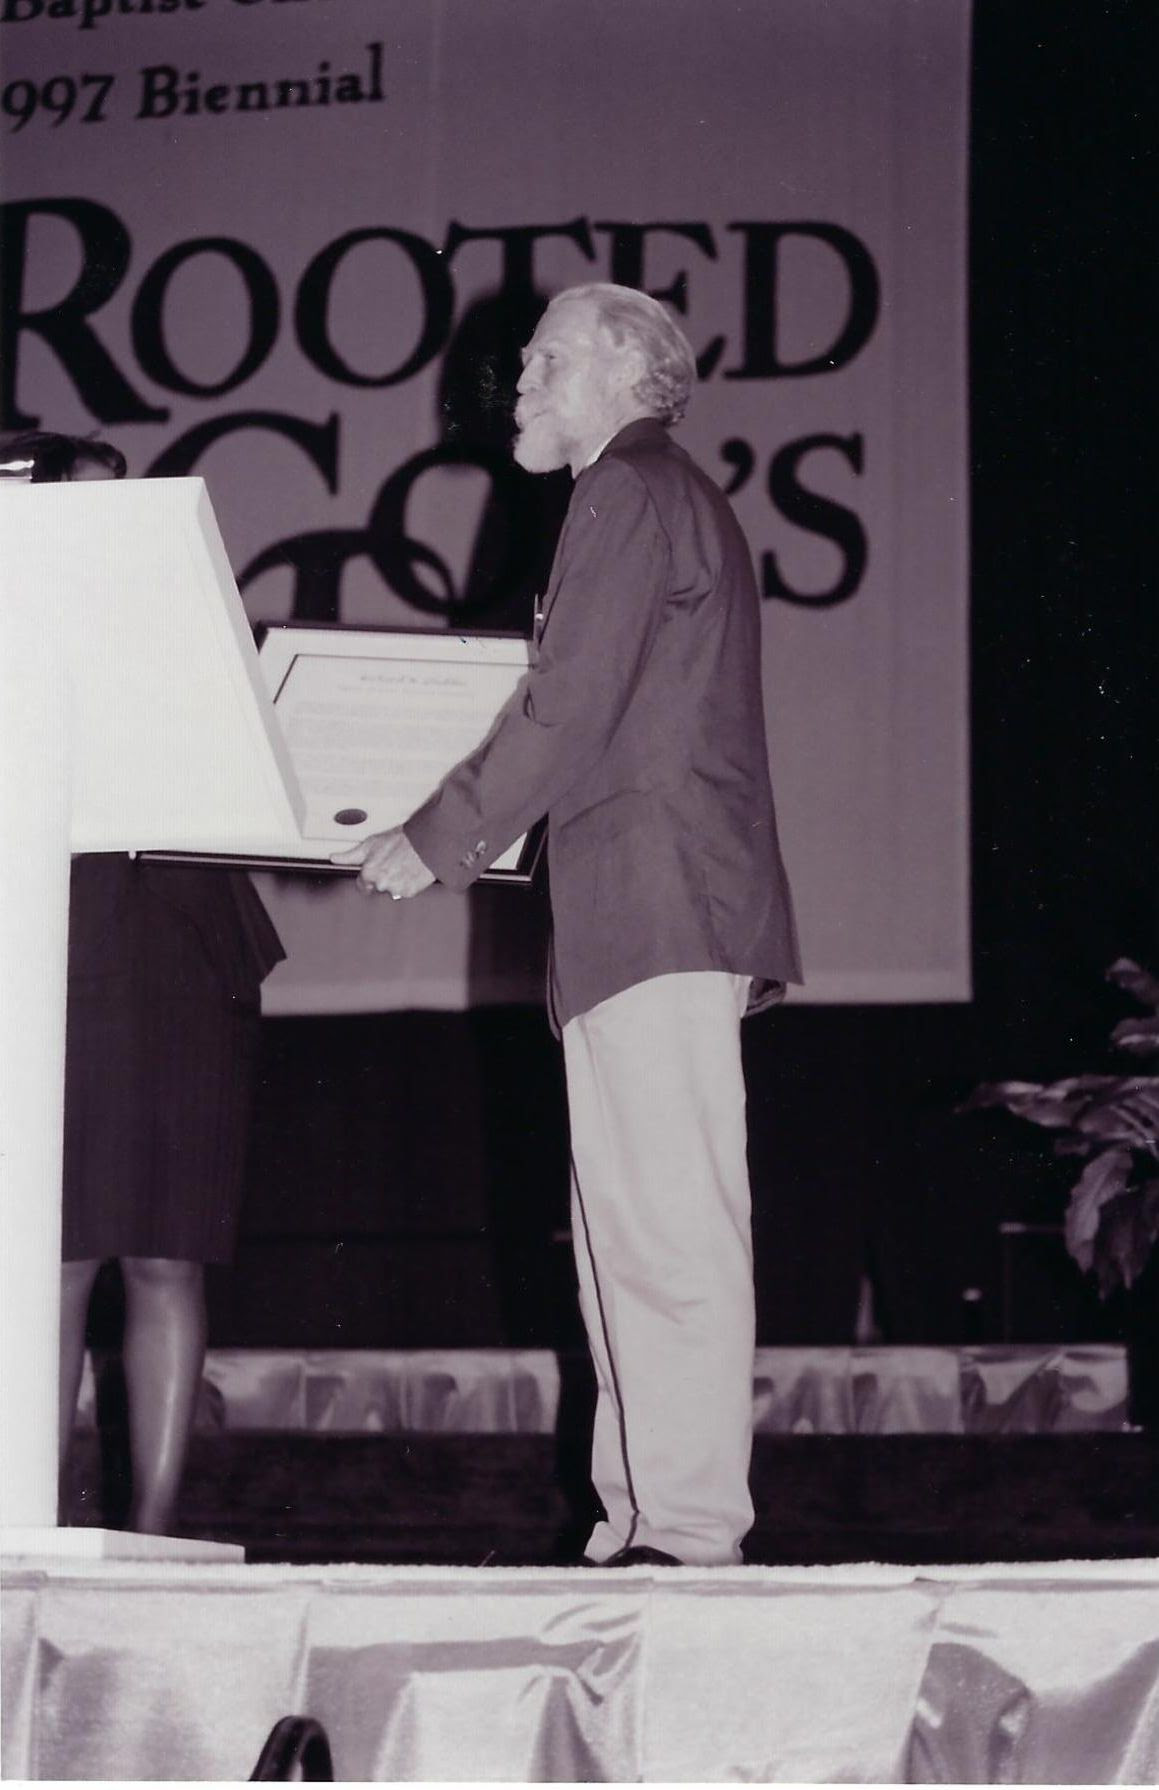 Gladden speaks at 1997 Biennial Meeting